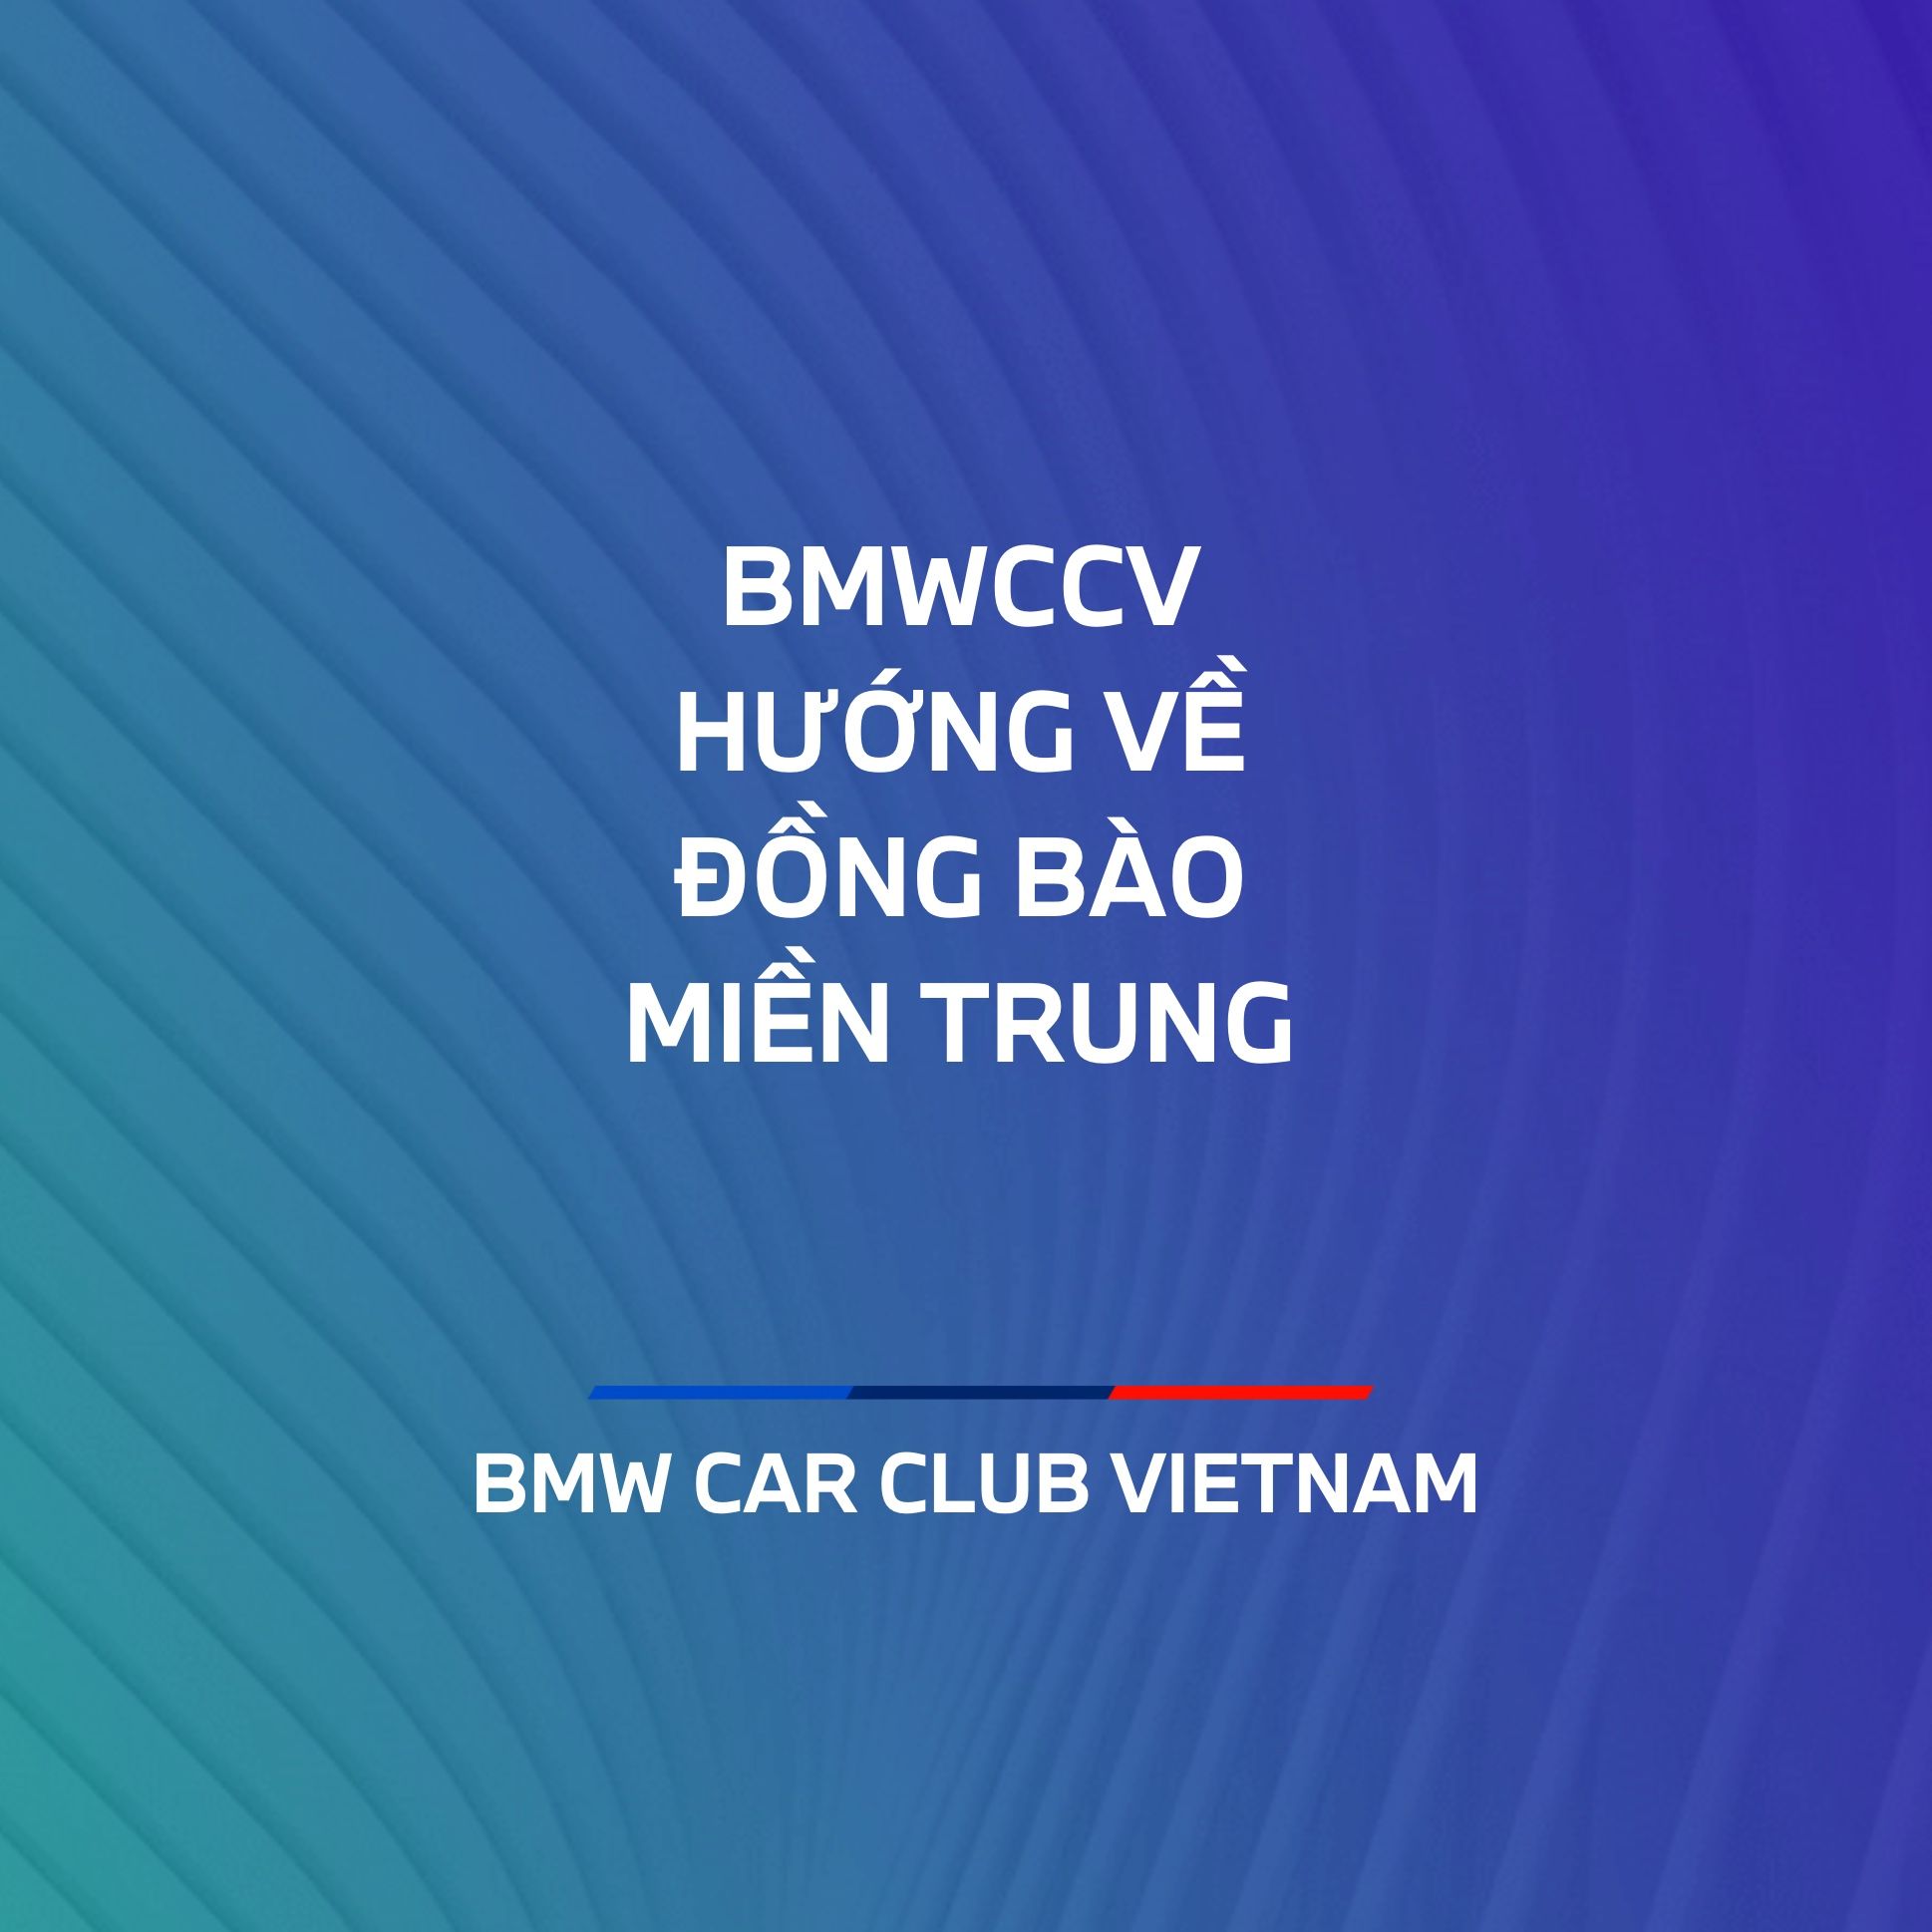 Các thành viên của BMWCCV quyên góp 60+ triệu Đồng ủng hộ đồng bào Miền Trung